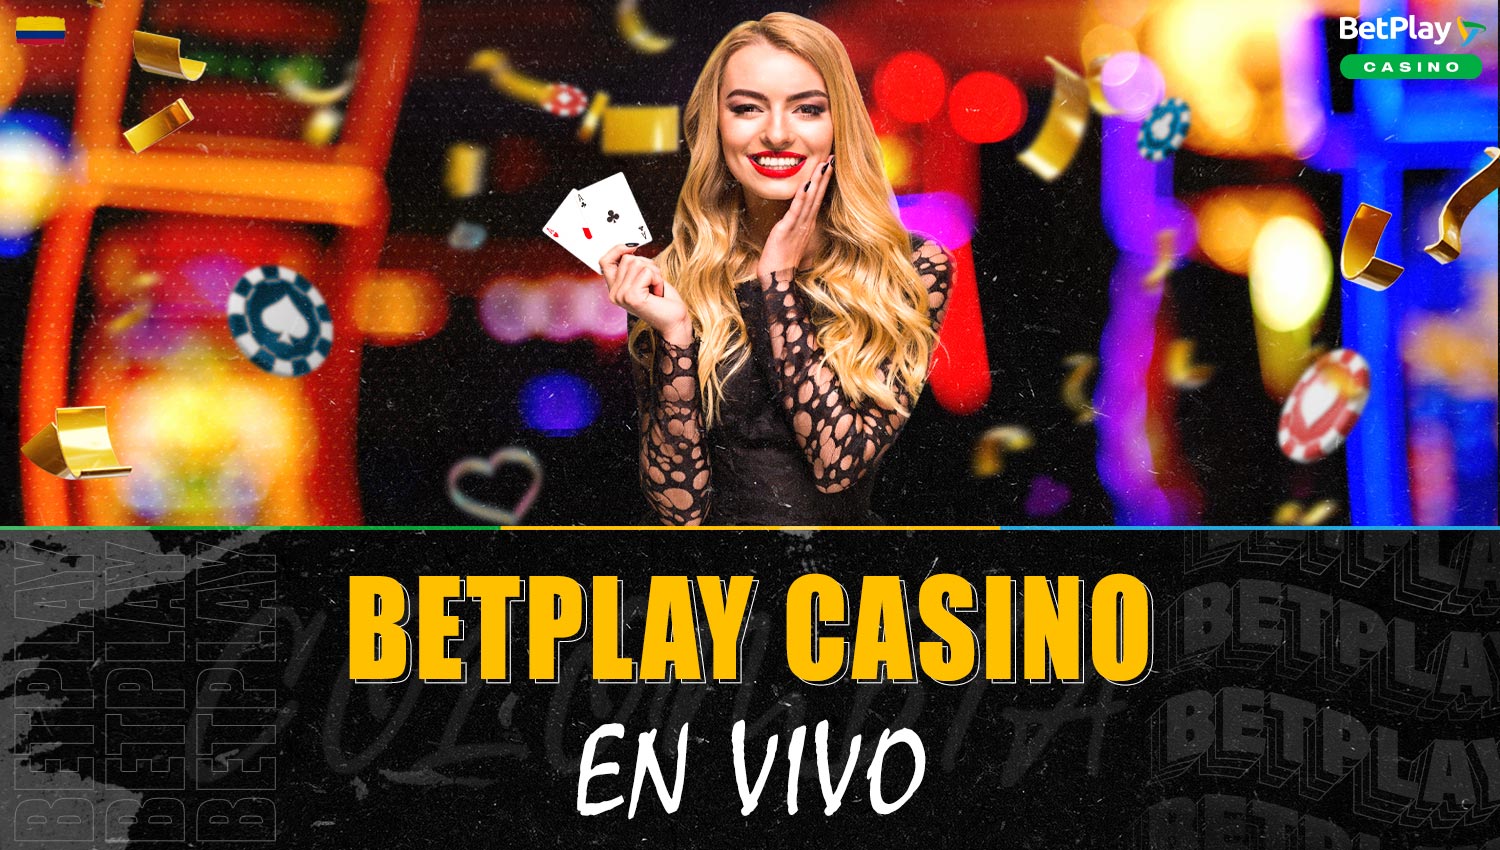 Reseña completa de la sección de casino en vivo en la plataforma Betplay Colombia